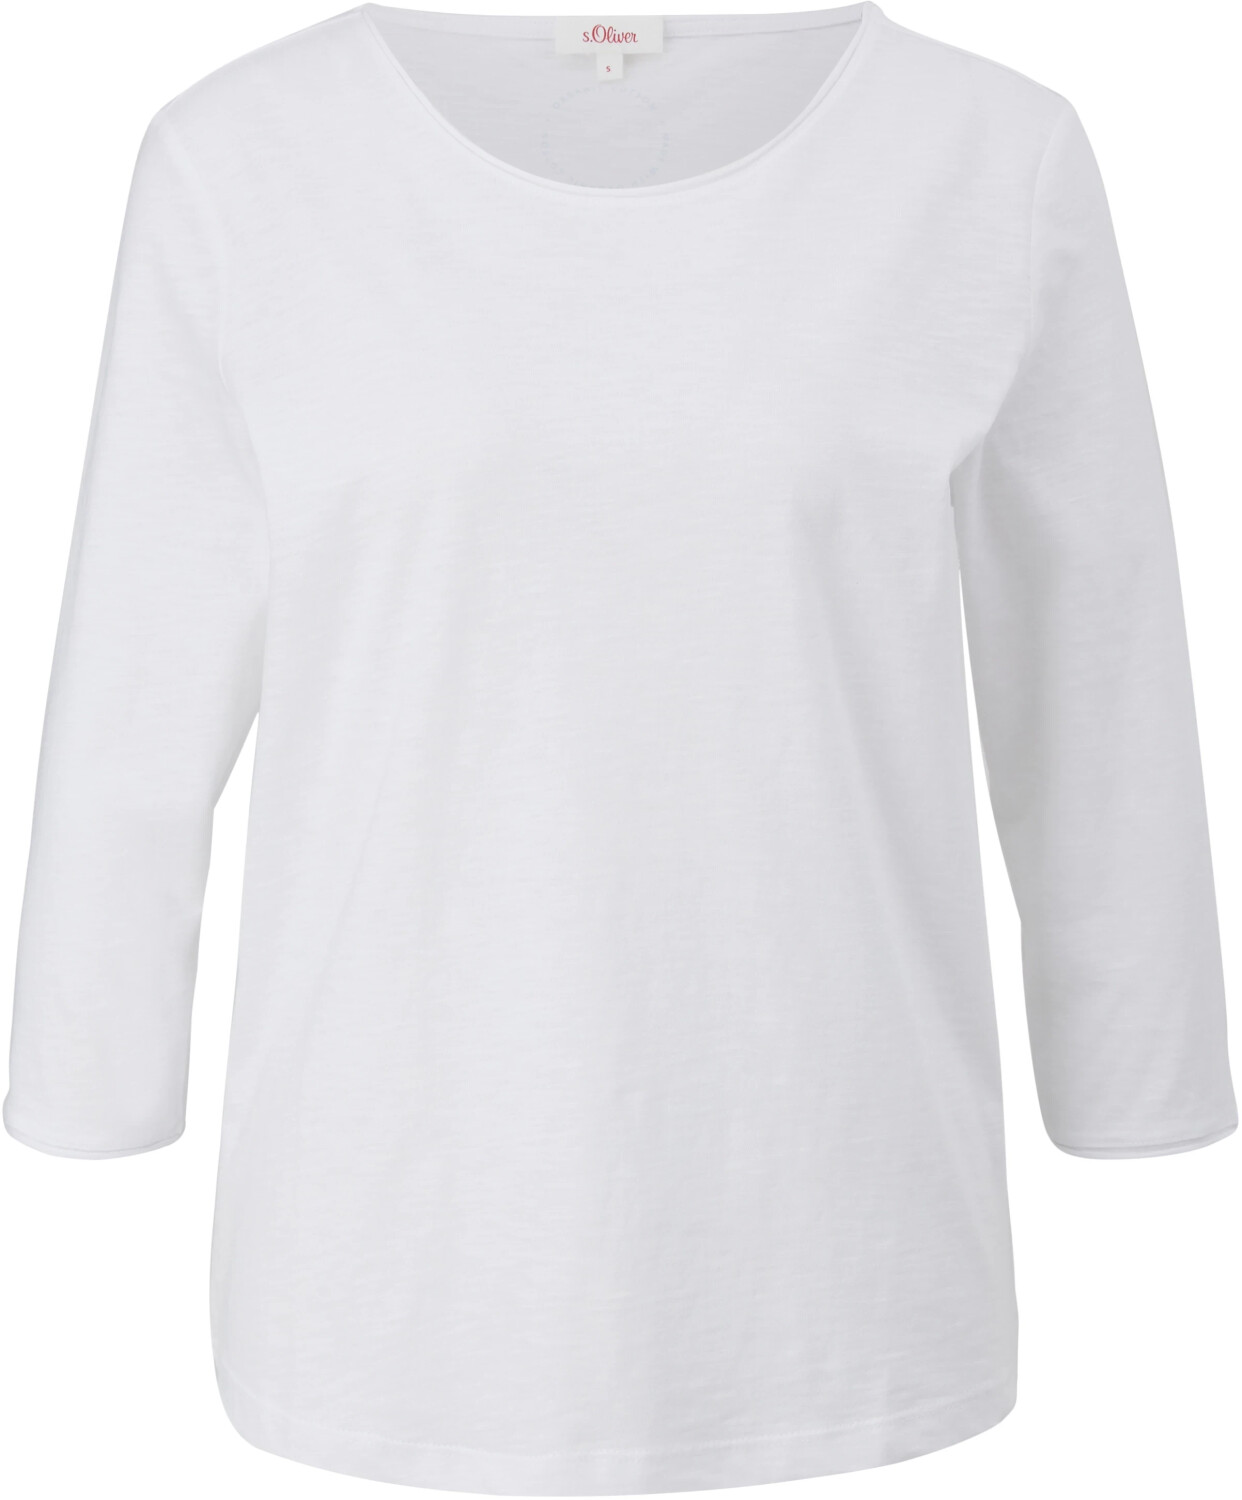 S.Oliver T-Shirt aus Baumwolle (2112026.0100) weiß ab 16,99 € |  Preisvergleich bei